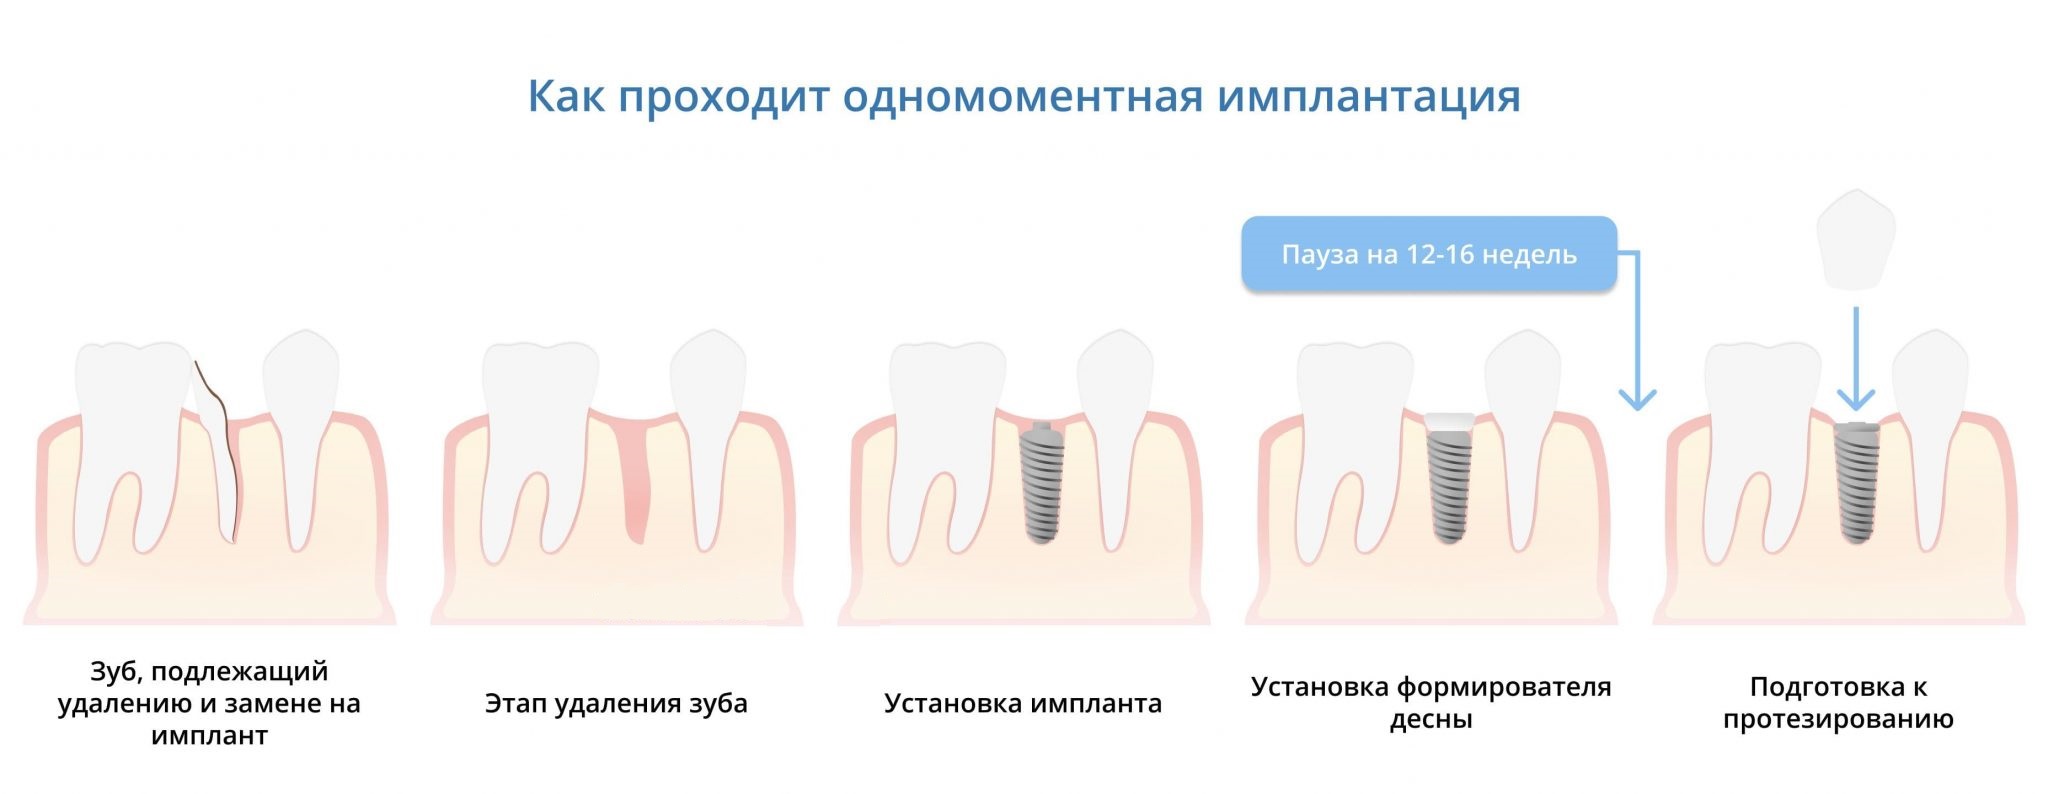 Процесс одномоментной имплантации зубов